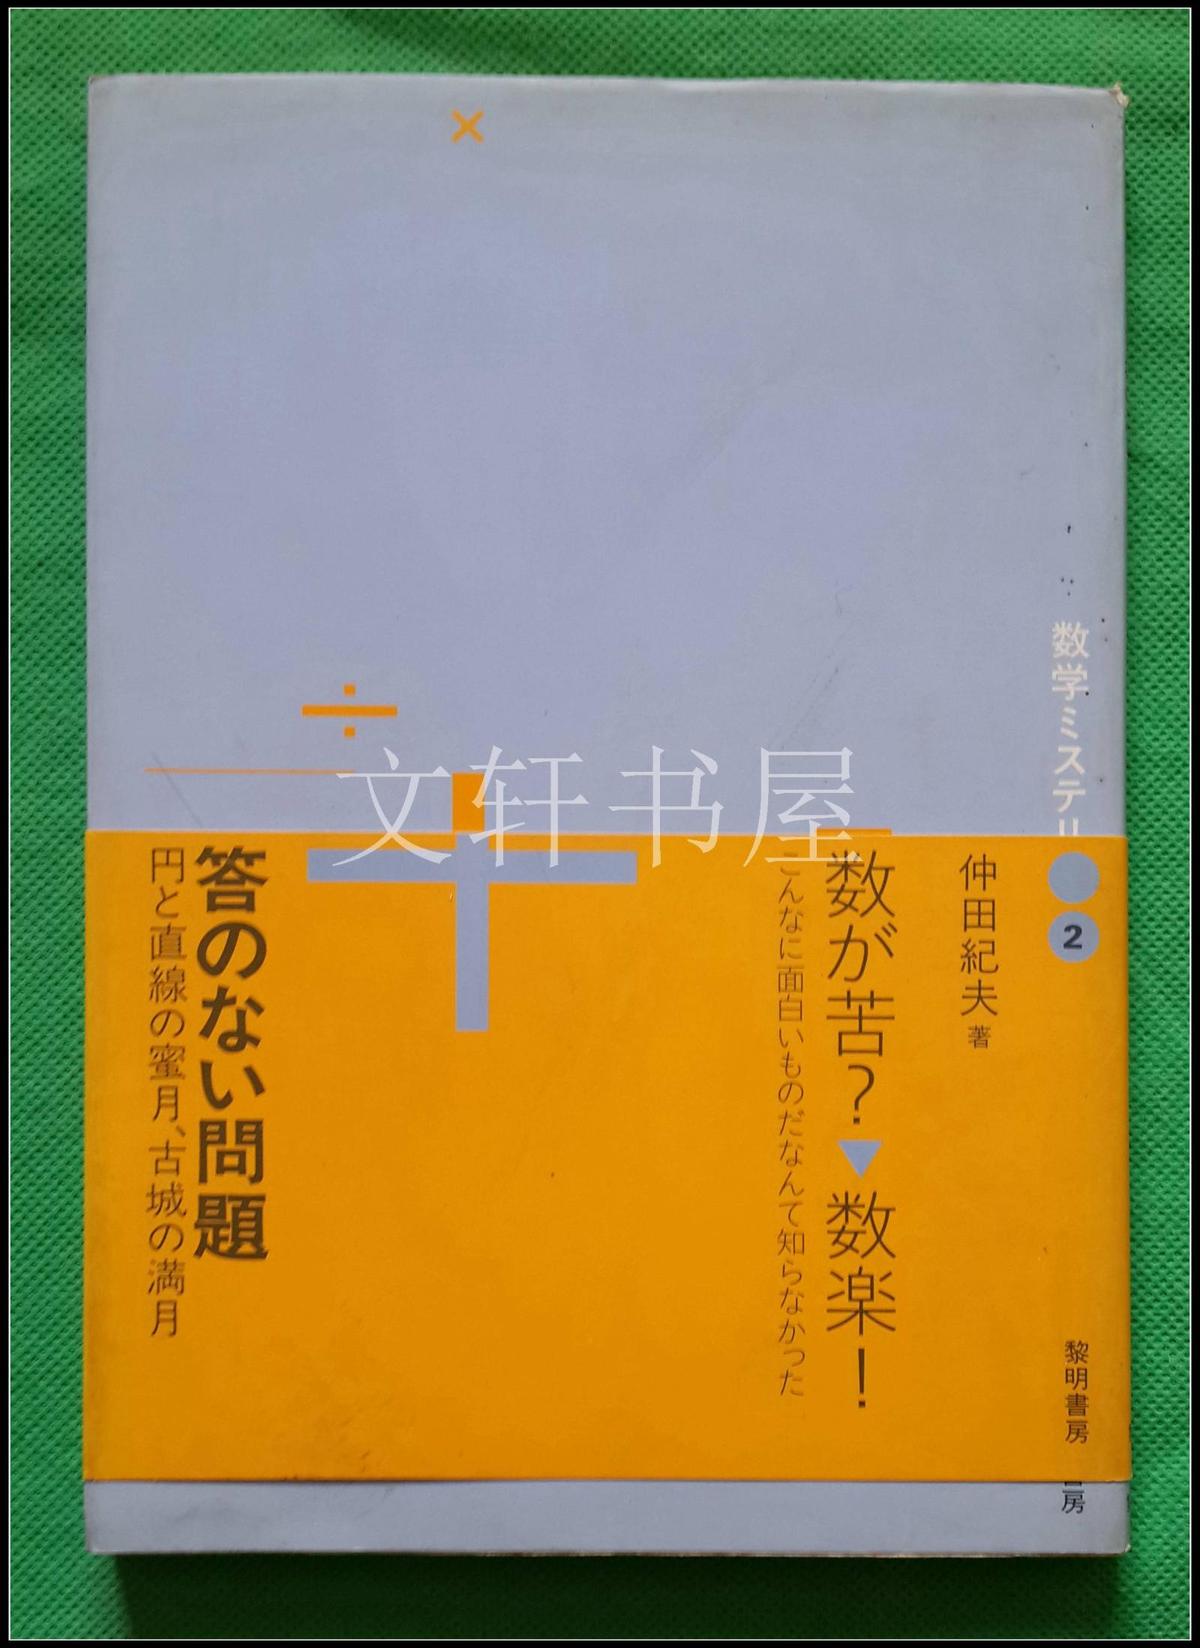 仲田纪夫签赠··【 答  问题 】日文··黎明书房··1993年1印